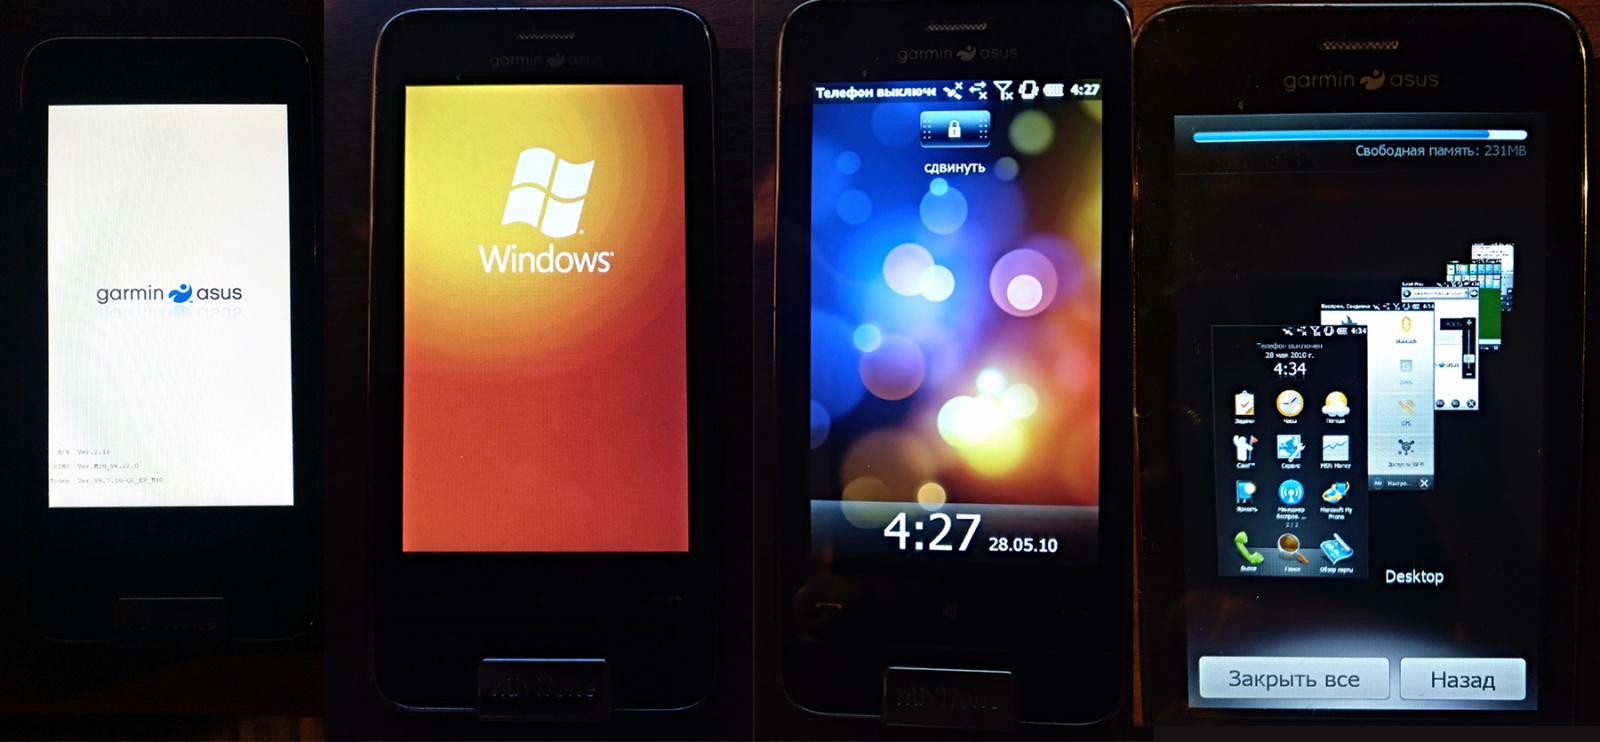 «Три девицы под окном» или вспоминаем как выглядели Windows Mobile 2003 SE, WM 6, WM 6.5 - 10